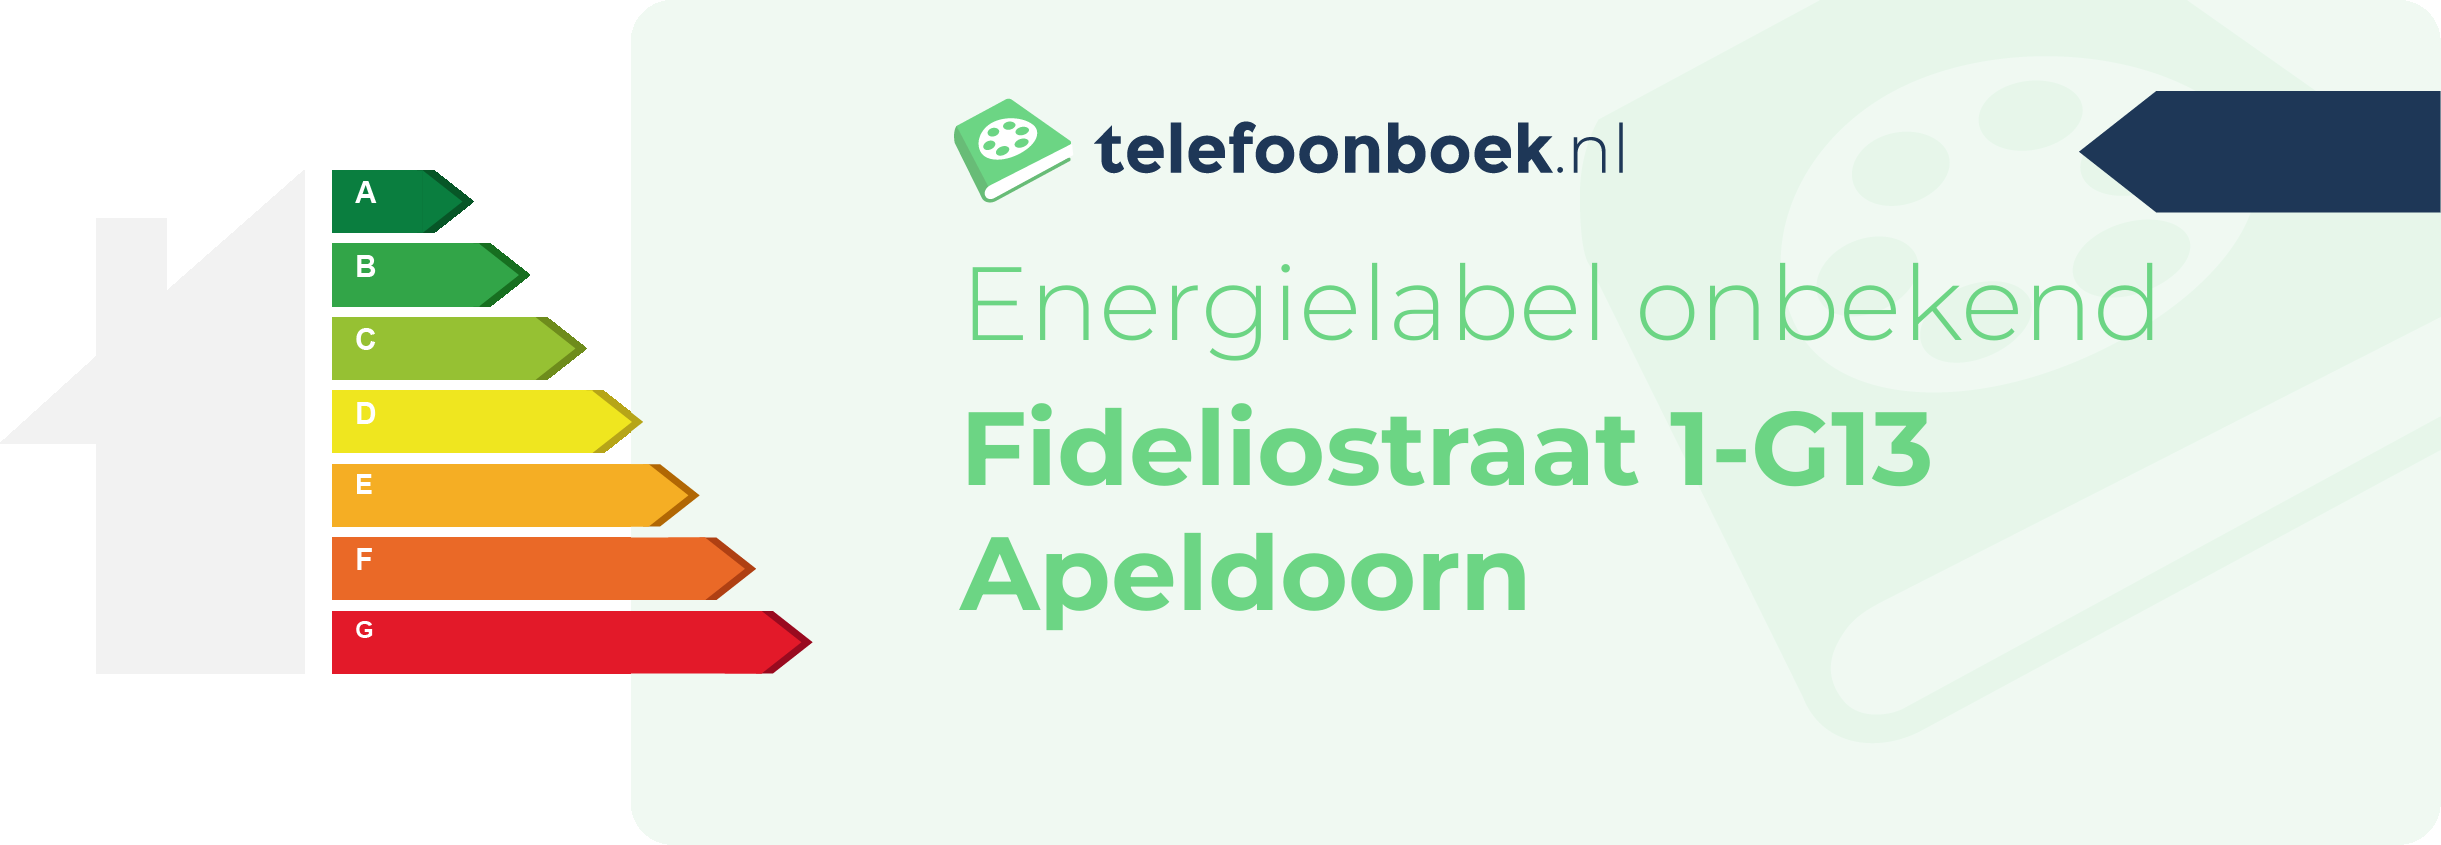 Energielabel Fideliostraat 1-G13 Apeldoorn